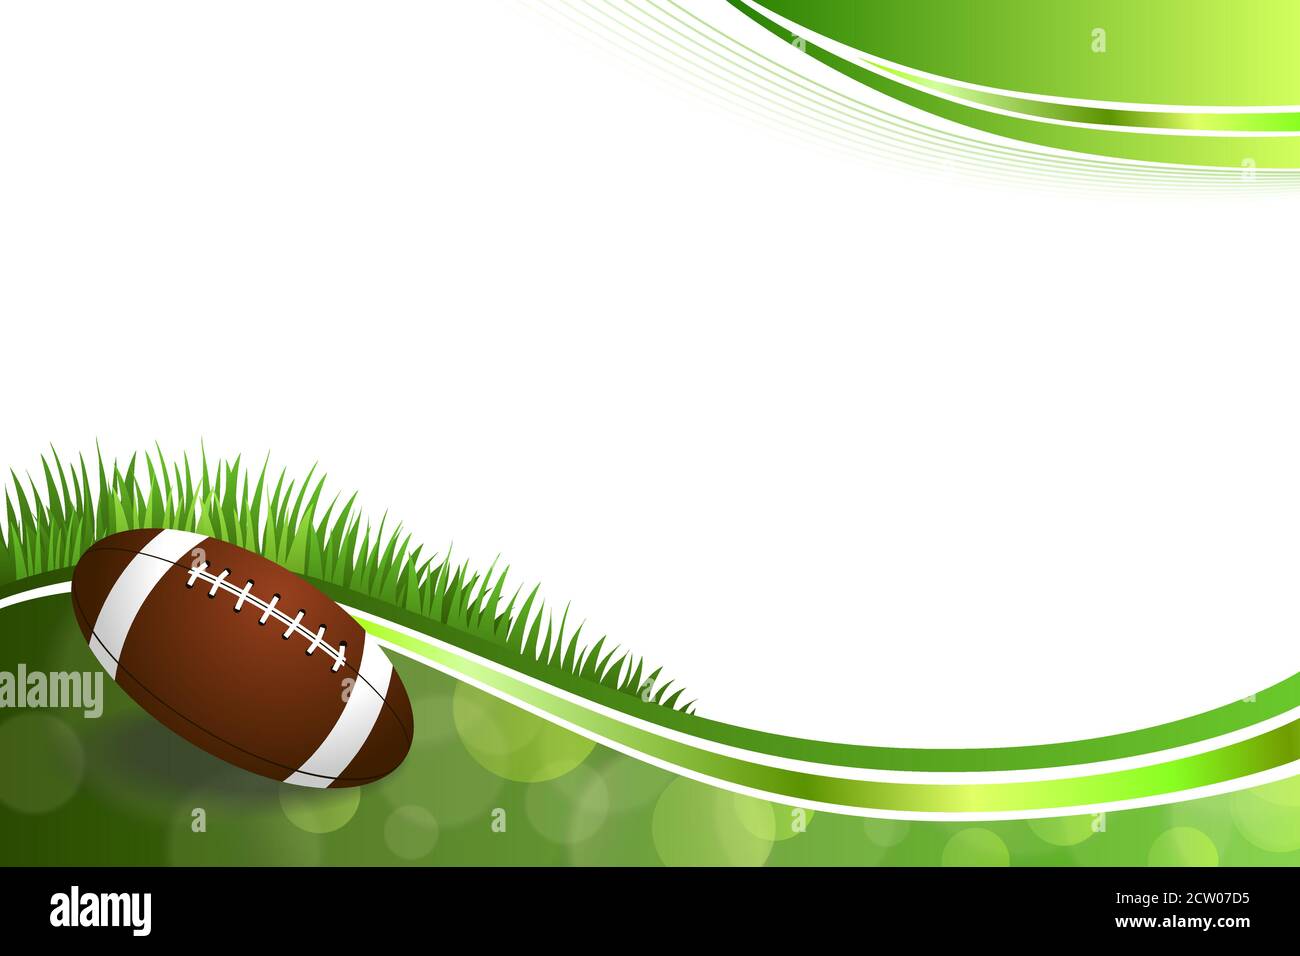 Hintergrund abstrakt grün American Football Ball Illustration Vektor Stock Vektor